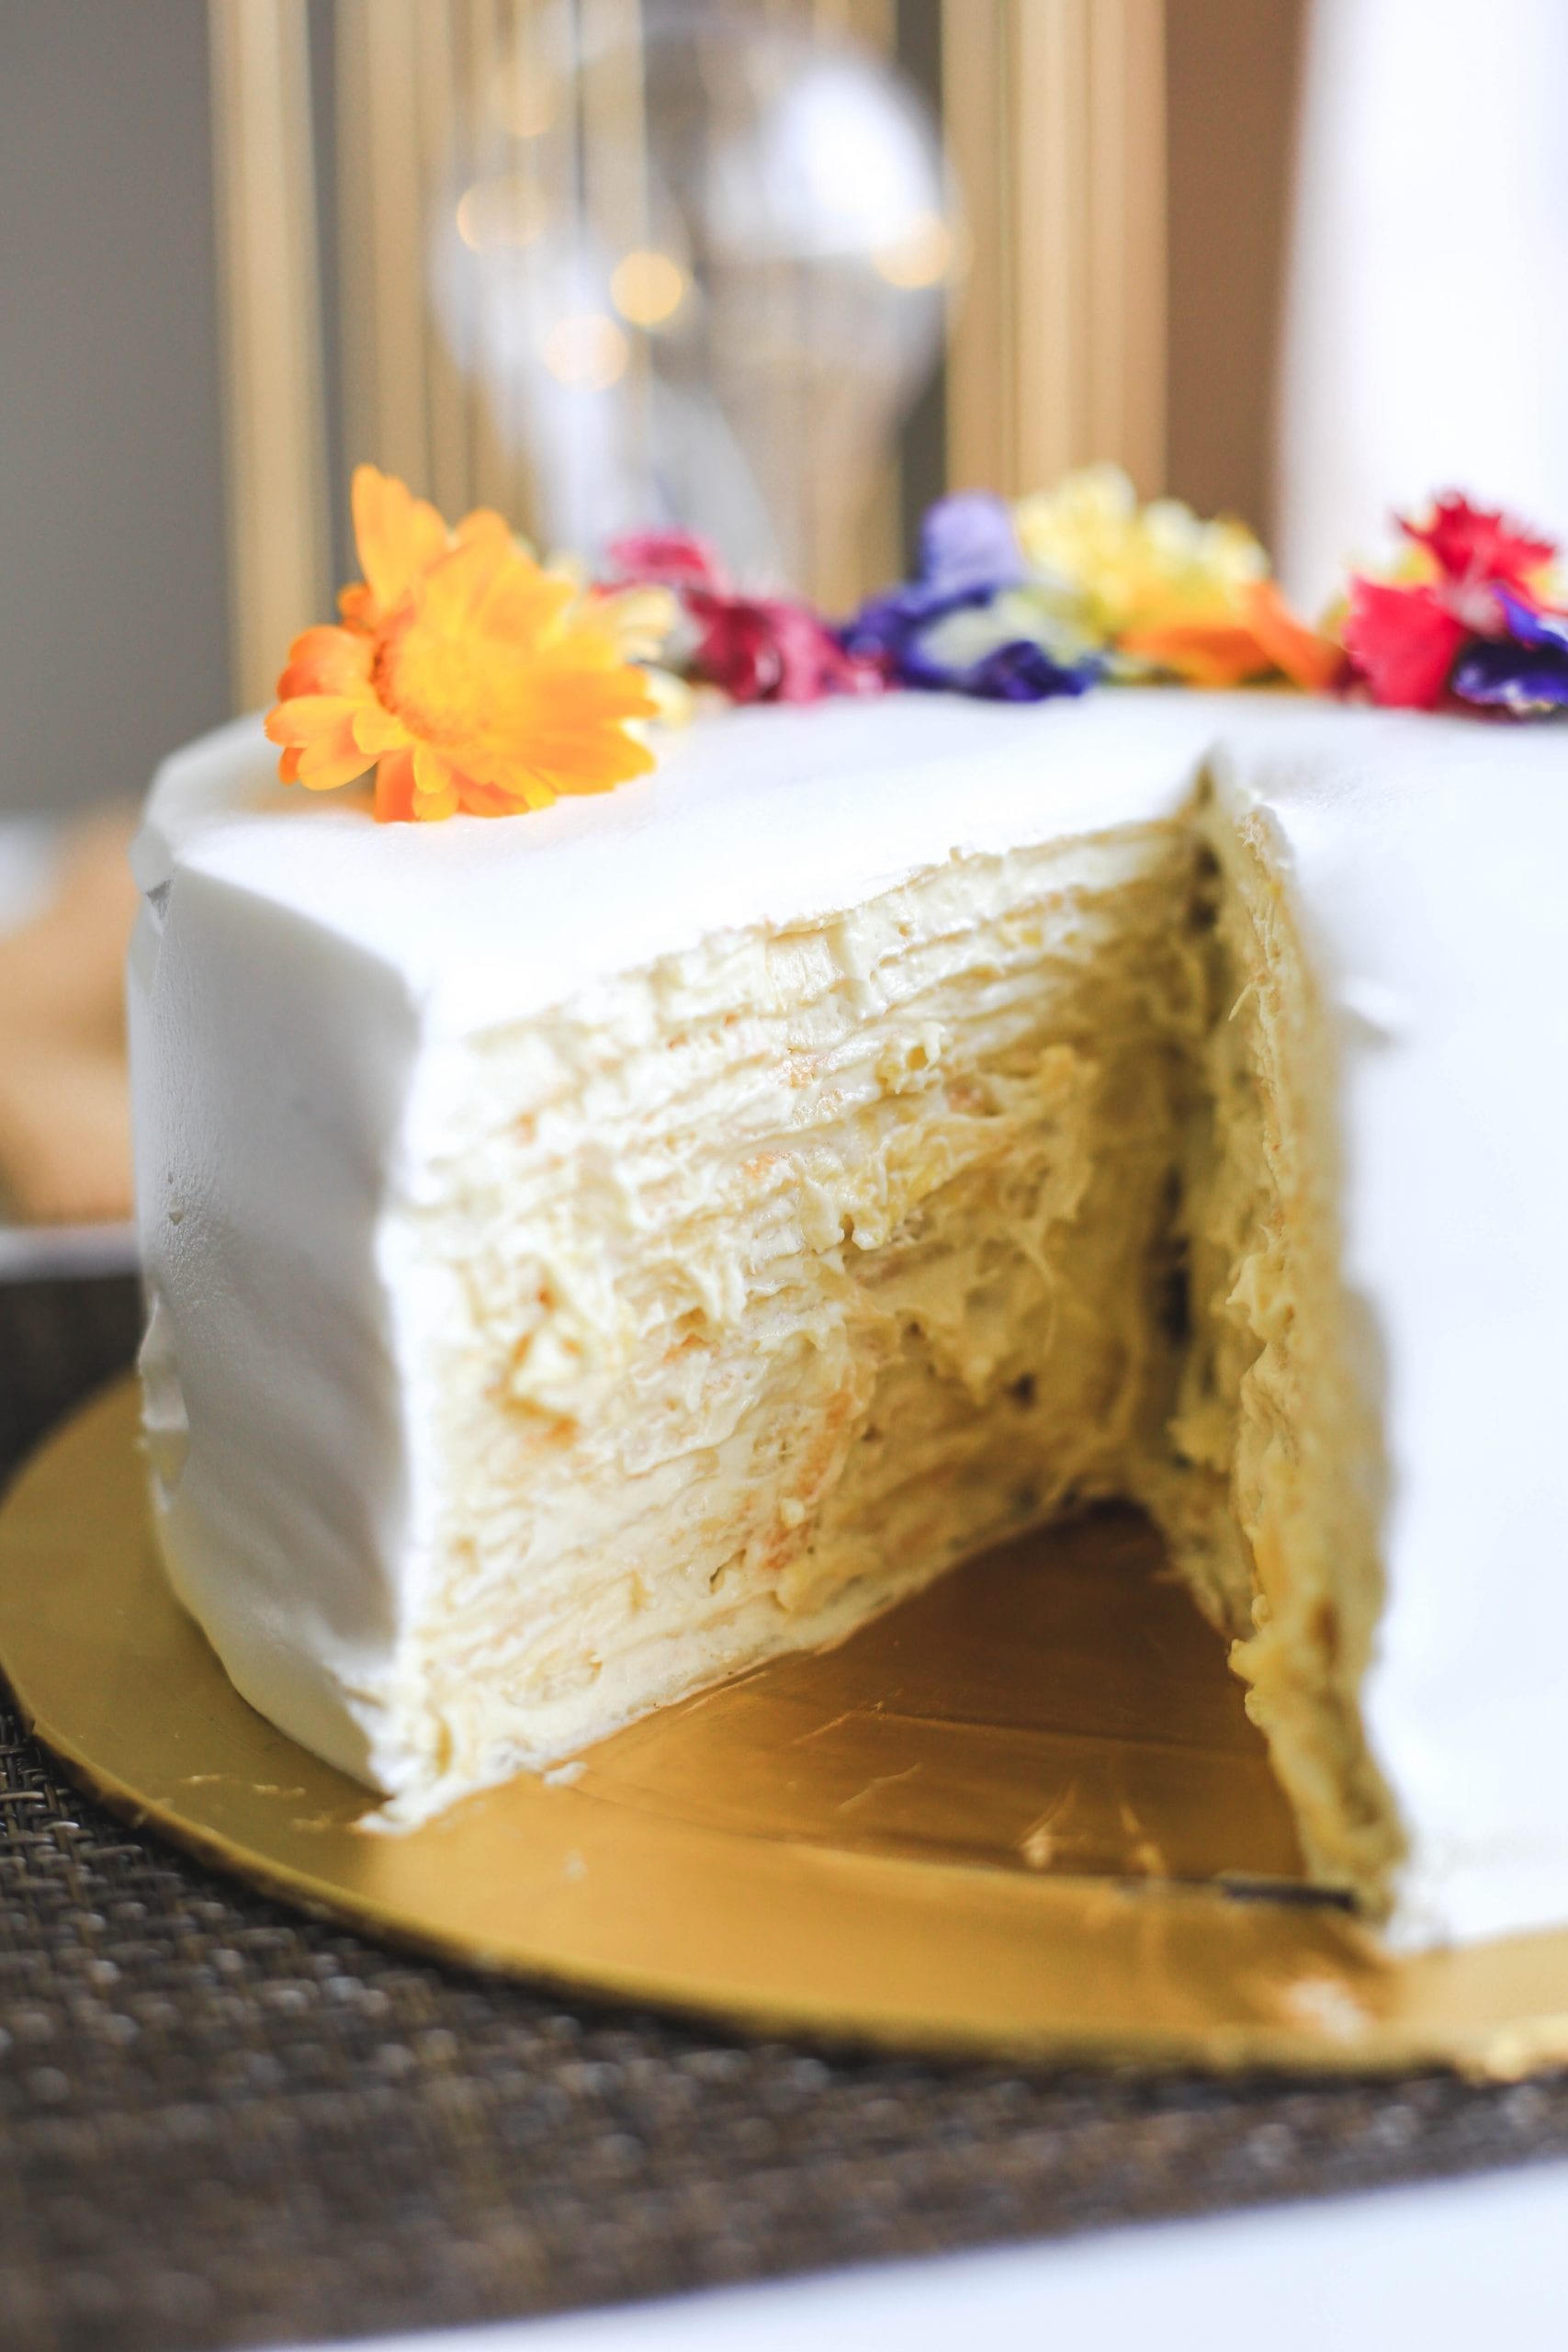 Musang King Durian Cake – The Ichhong